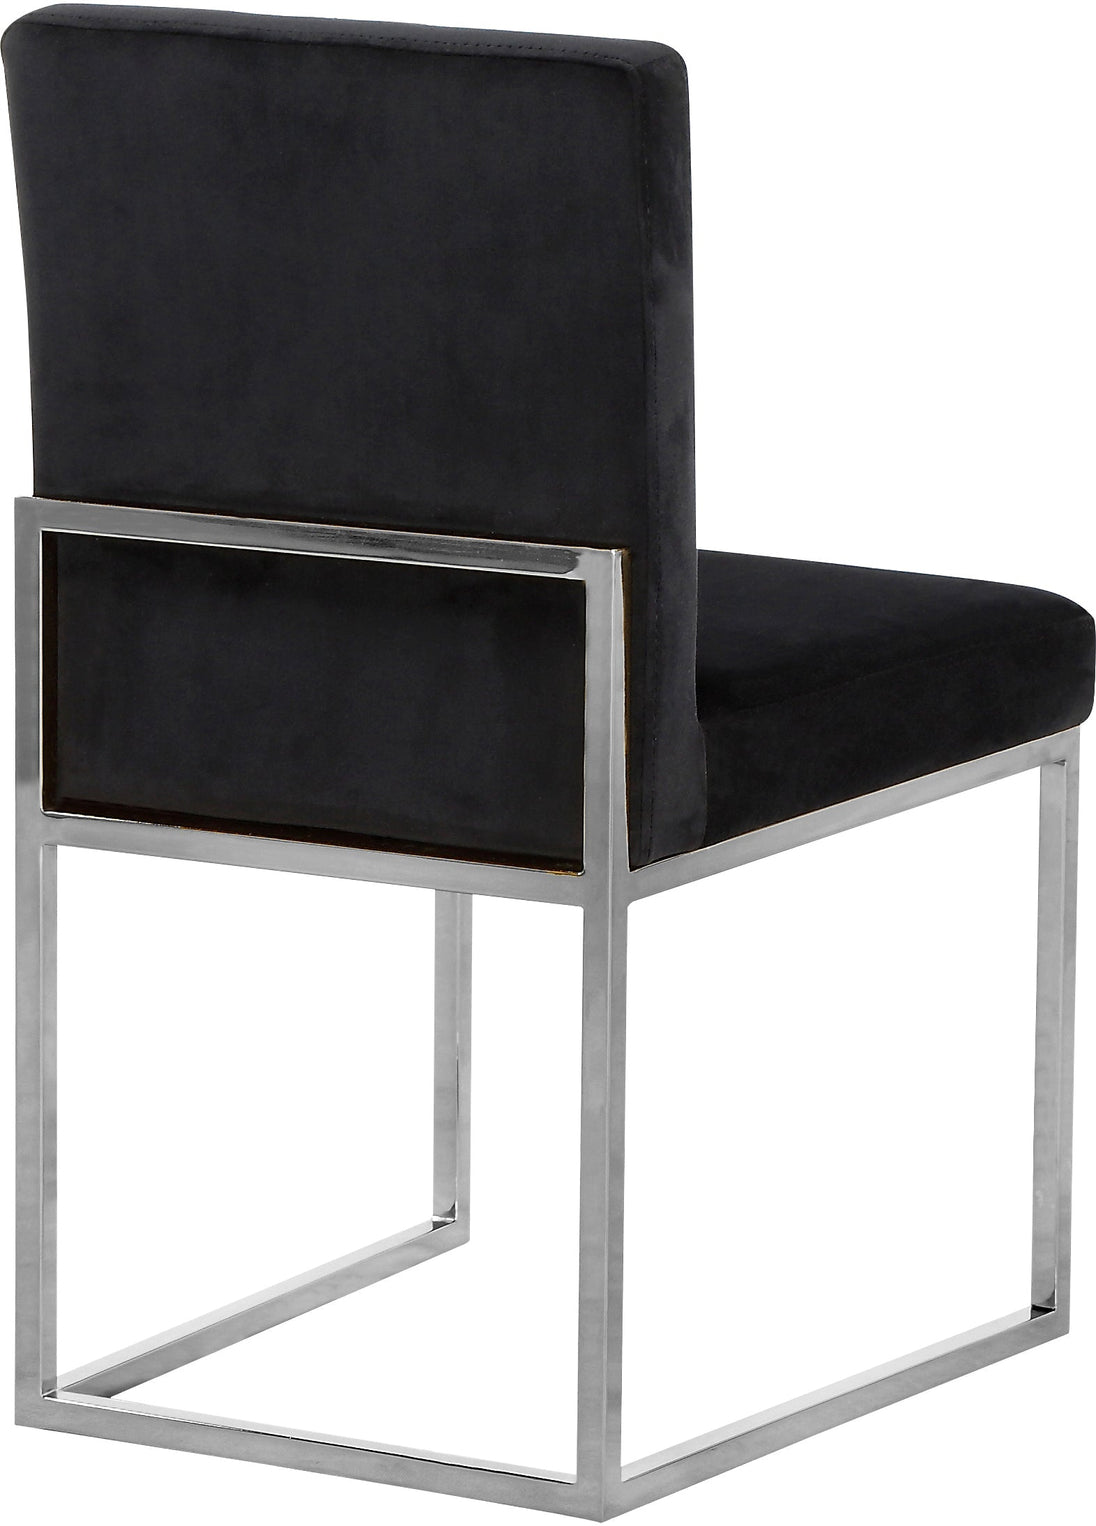 Giselle Velvet Dining Chair - Furniture Depot